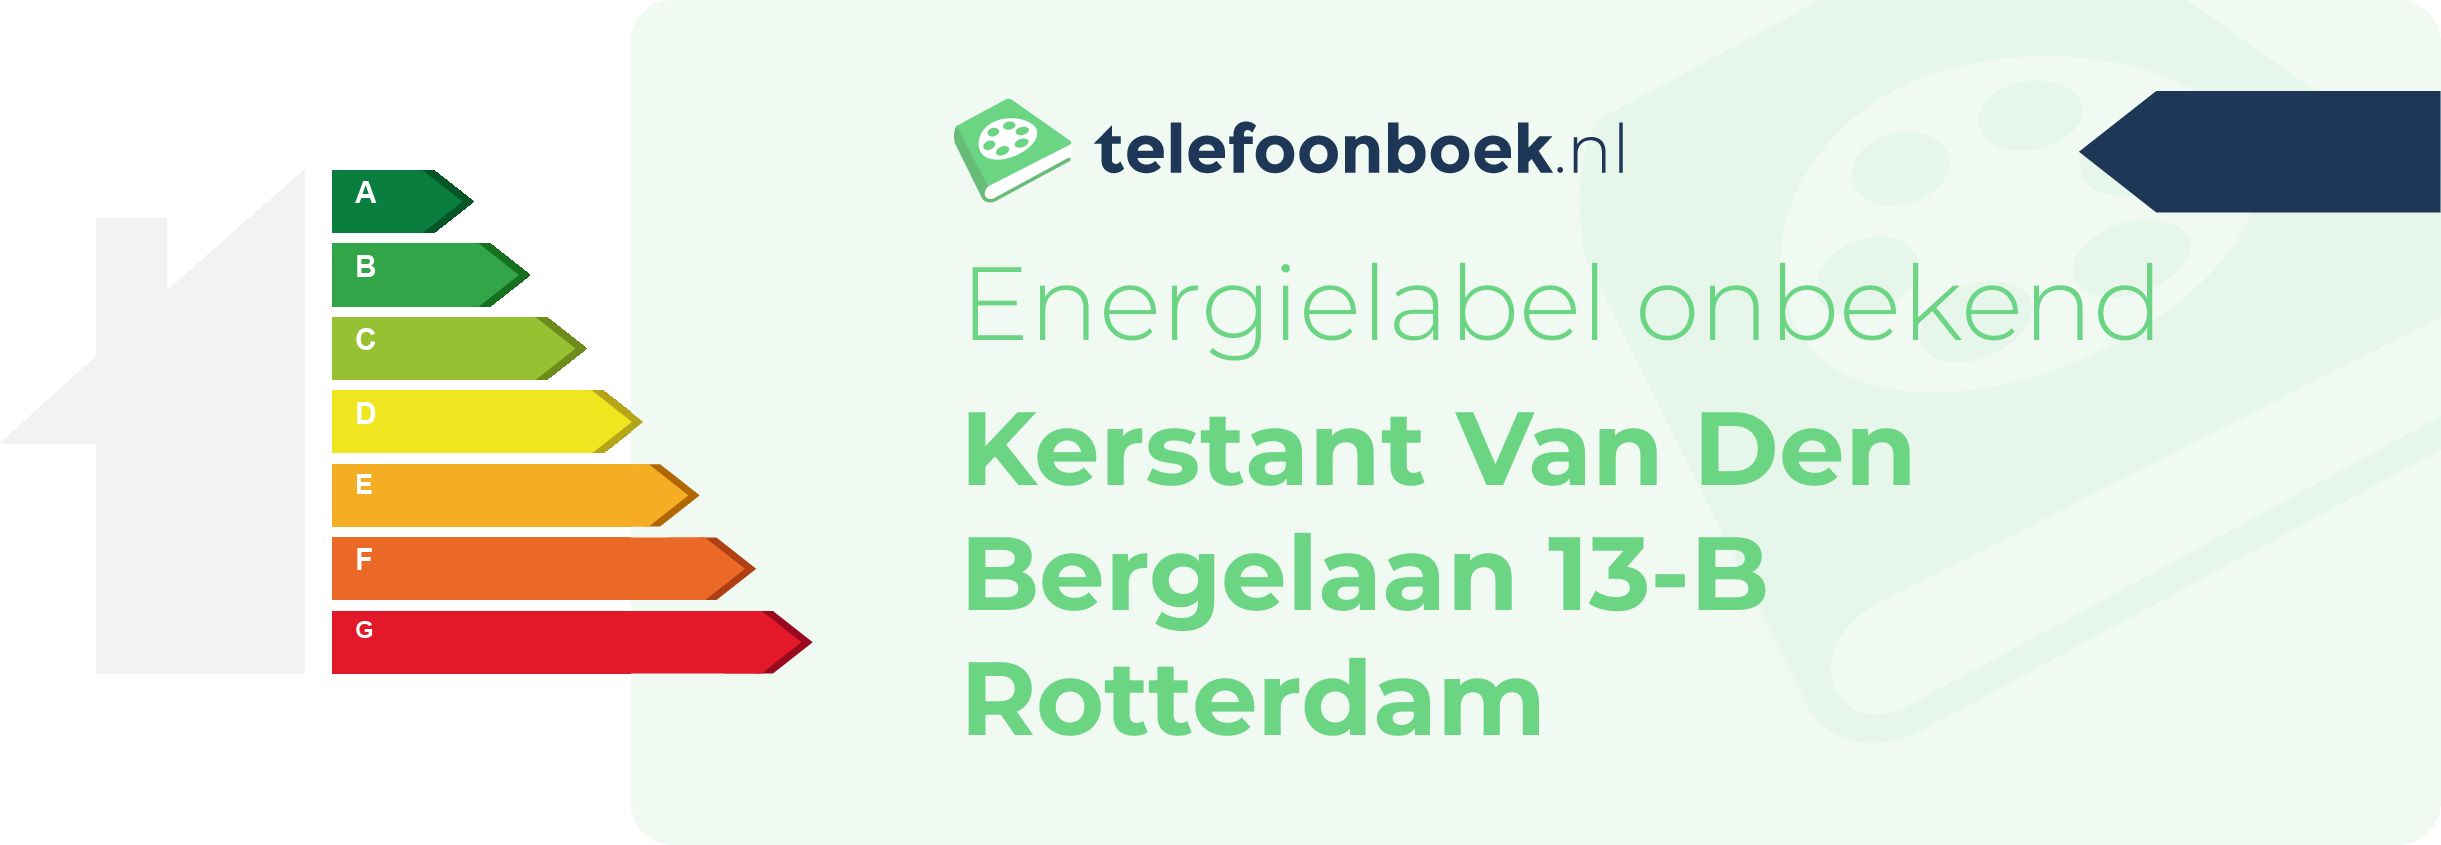 Energielabel Kerstant Van Den Bergelaan 13-B Rotterdam